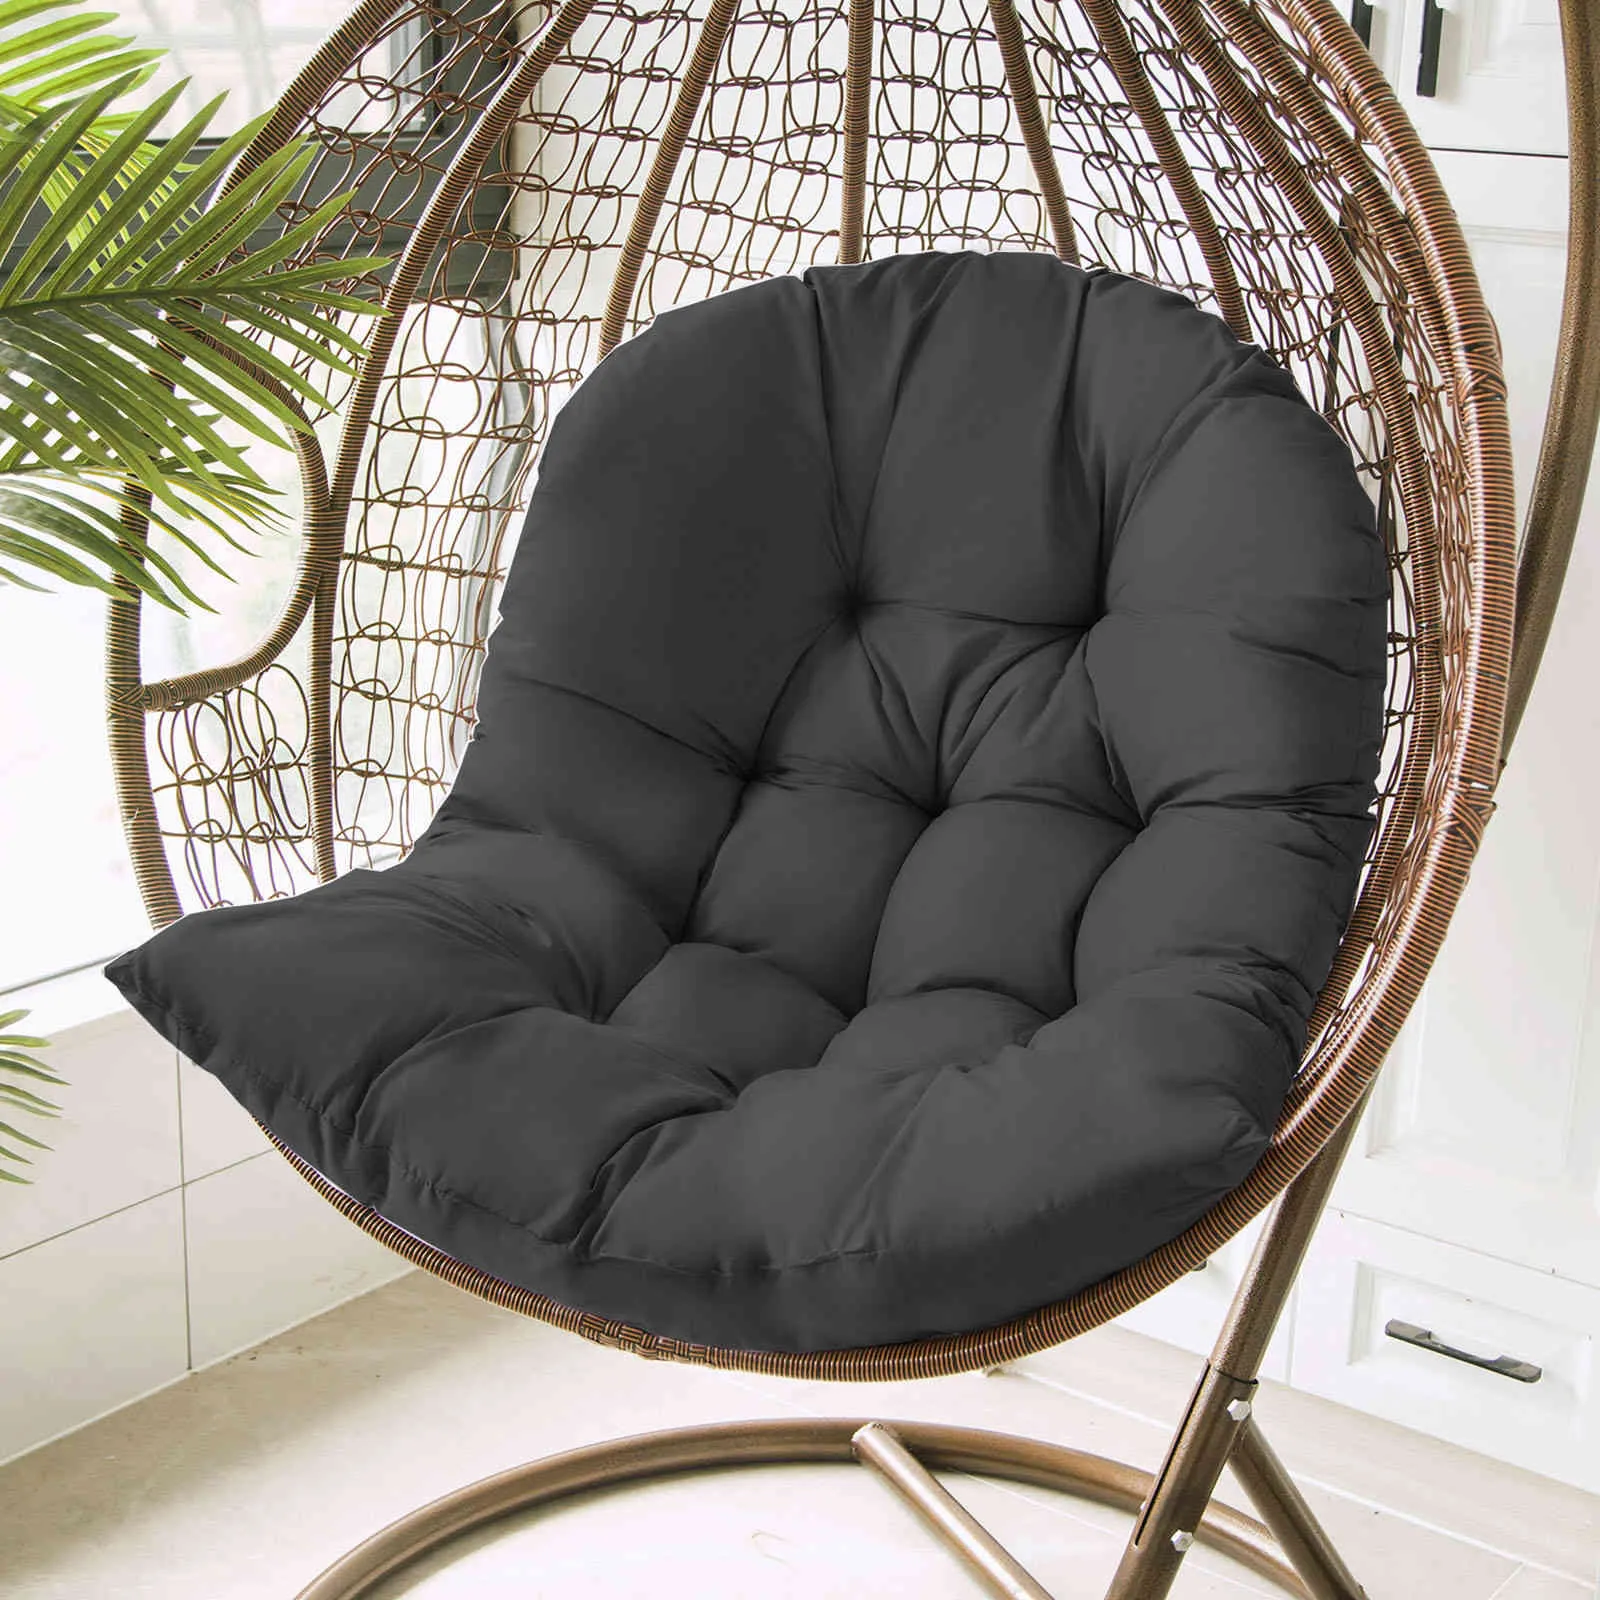 Eierstoel Hangmat Garden Swing Cushion Hangstoel met rugrt Decoratief kussen3512605